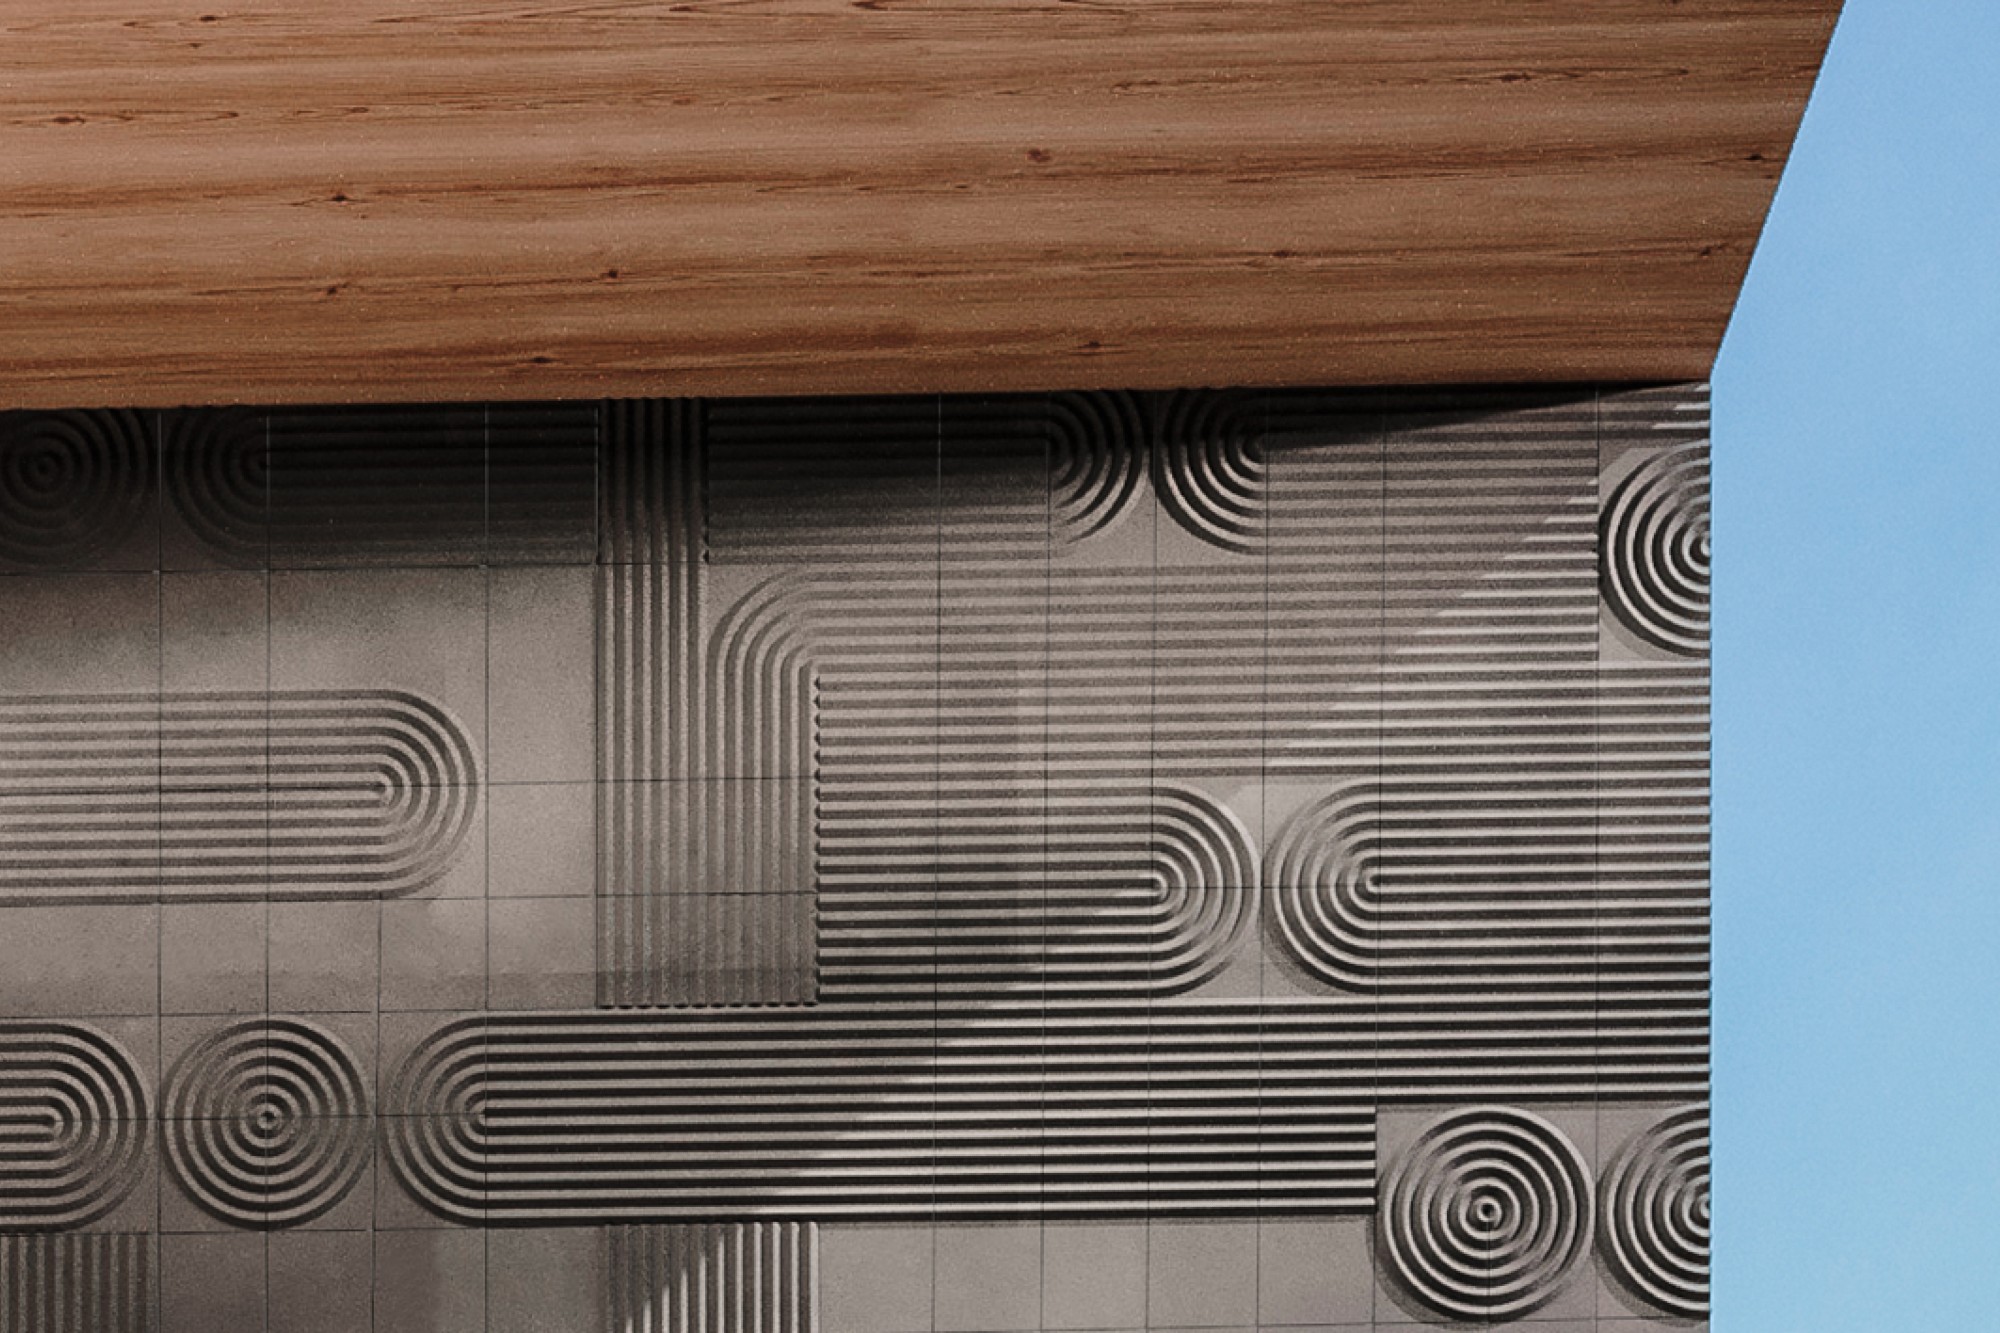 Nuance Studio introduces Linea concrete wall designs